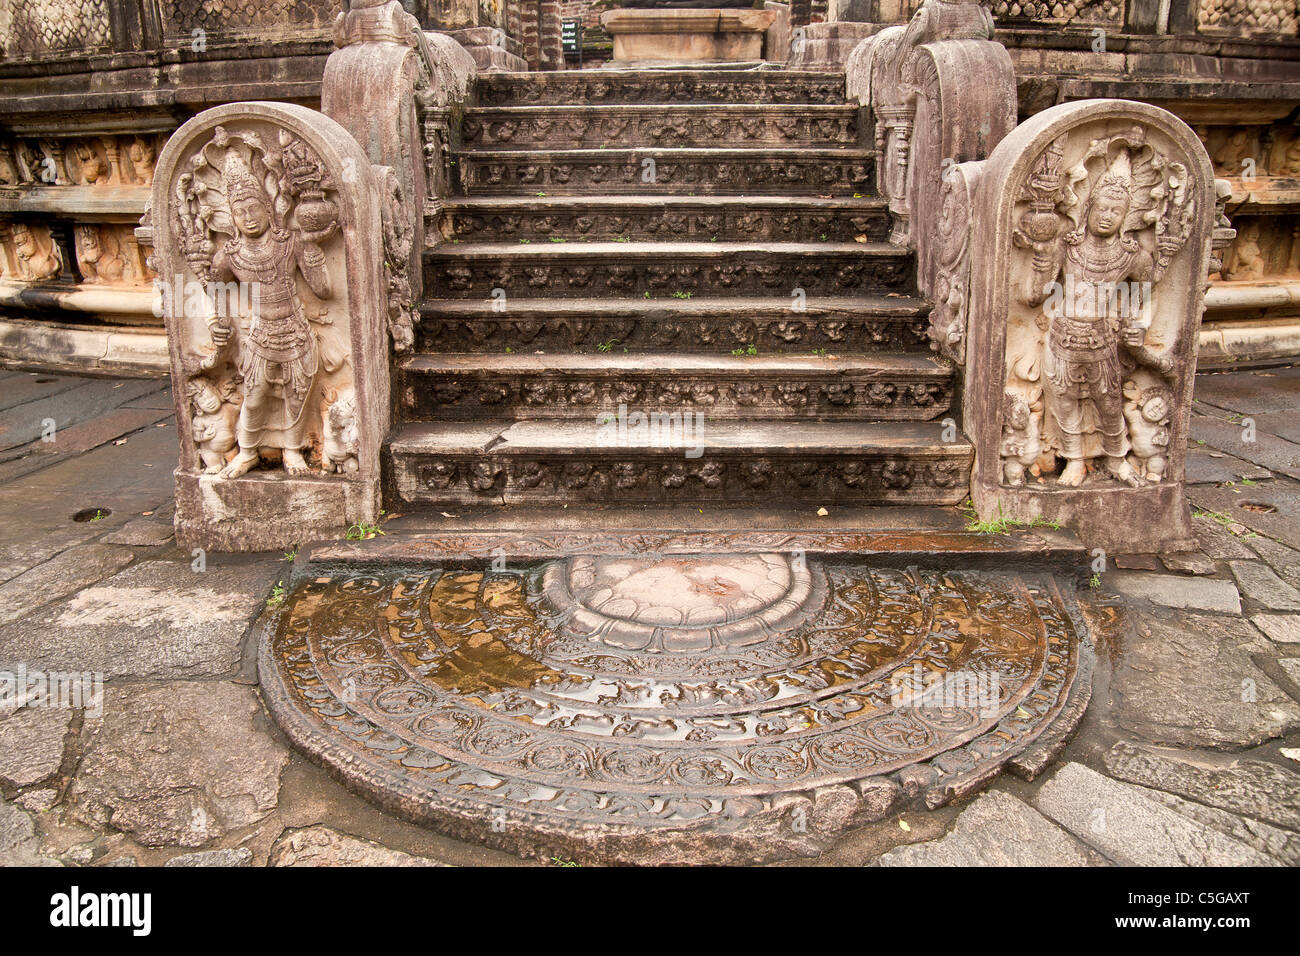 Le sandakada pahana ou pierre de lune et des gardes à l'entrée du Vatadage de Polonnaruwa, Polonnaruwa, Sri Lanka, Asie Banque D'Images